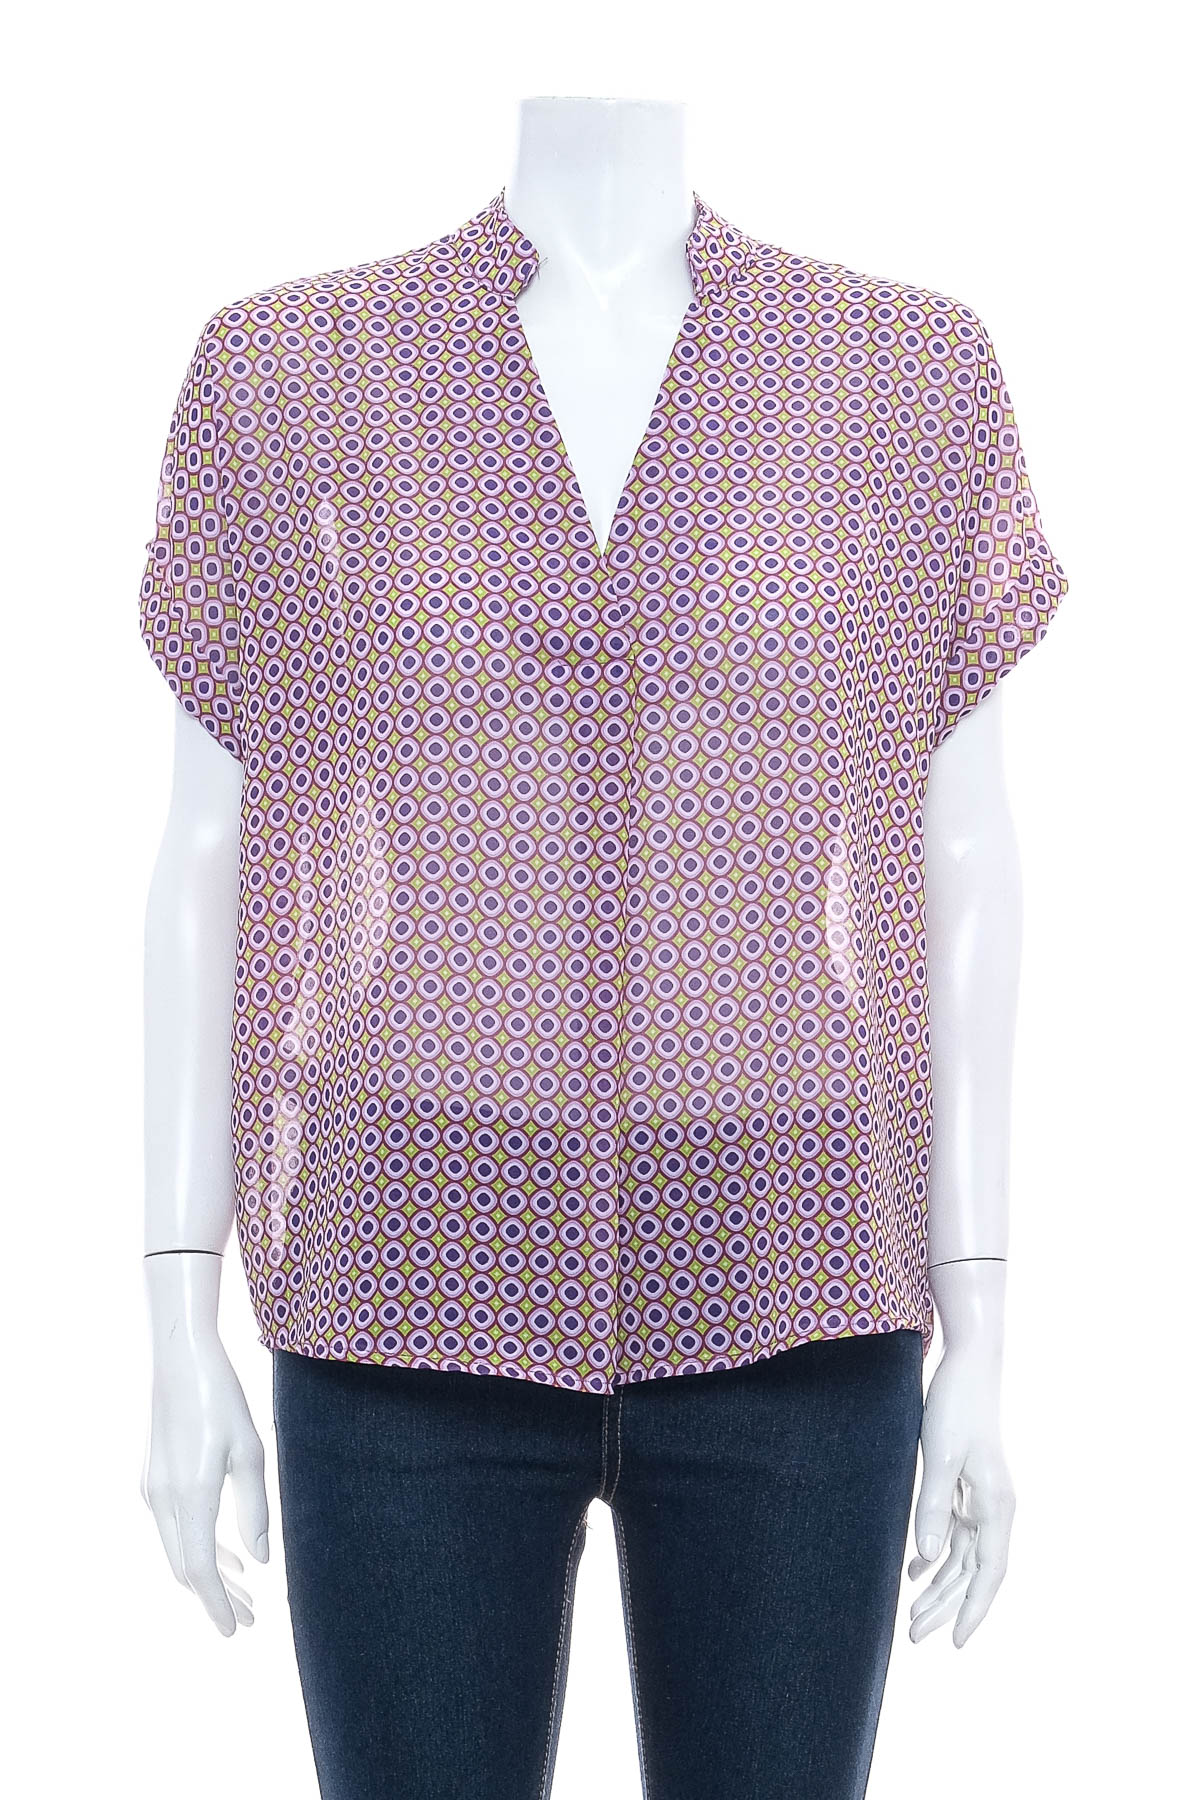 Γυναικείо πουκάμισο - New Collection - 0